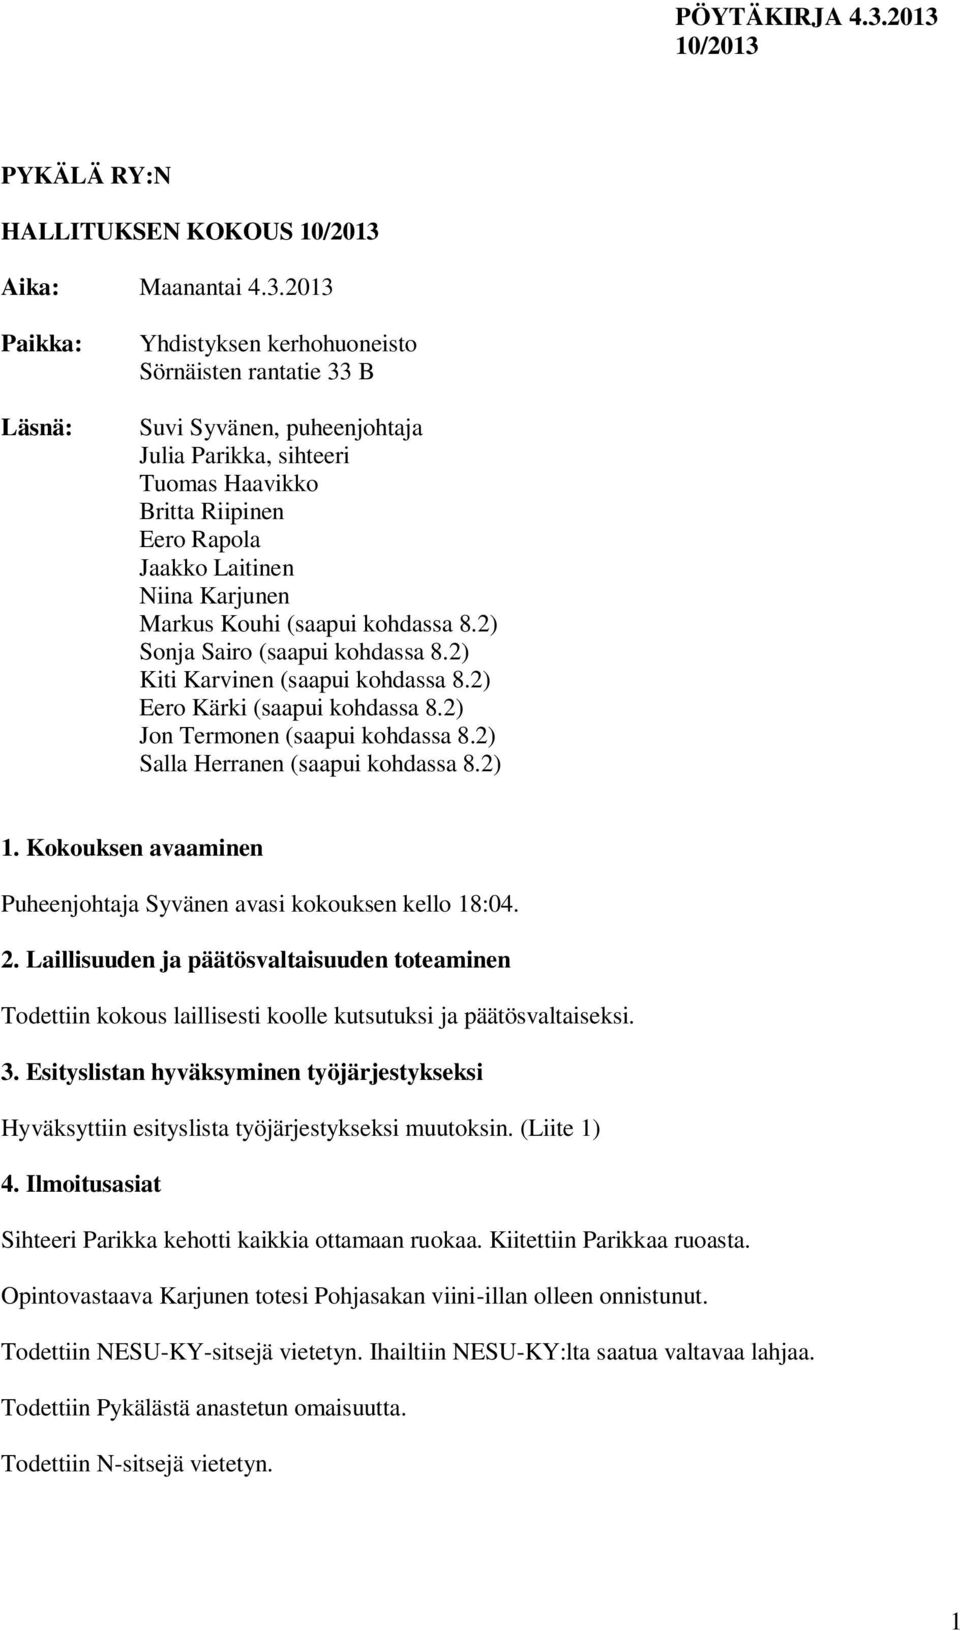 Markus Kouhi (saapui kohdassa 8.2) Sonja Sairo (saapui kohdassa 8.2) Kiti Karvinen (saapui kohdassa 8.2) Eero Kärki (saapui kohdassa 8.2) Jon Termonen (saapui kohdassa 8.